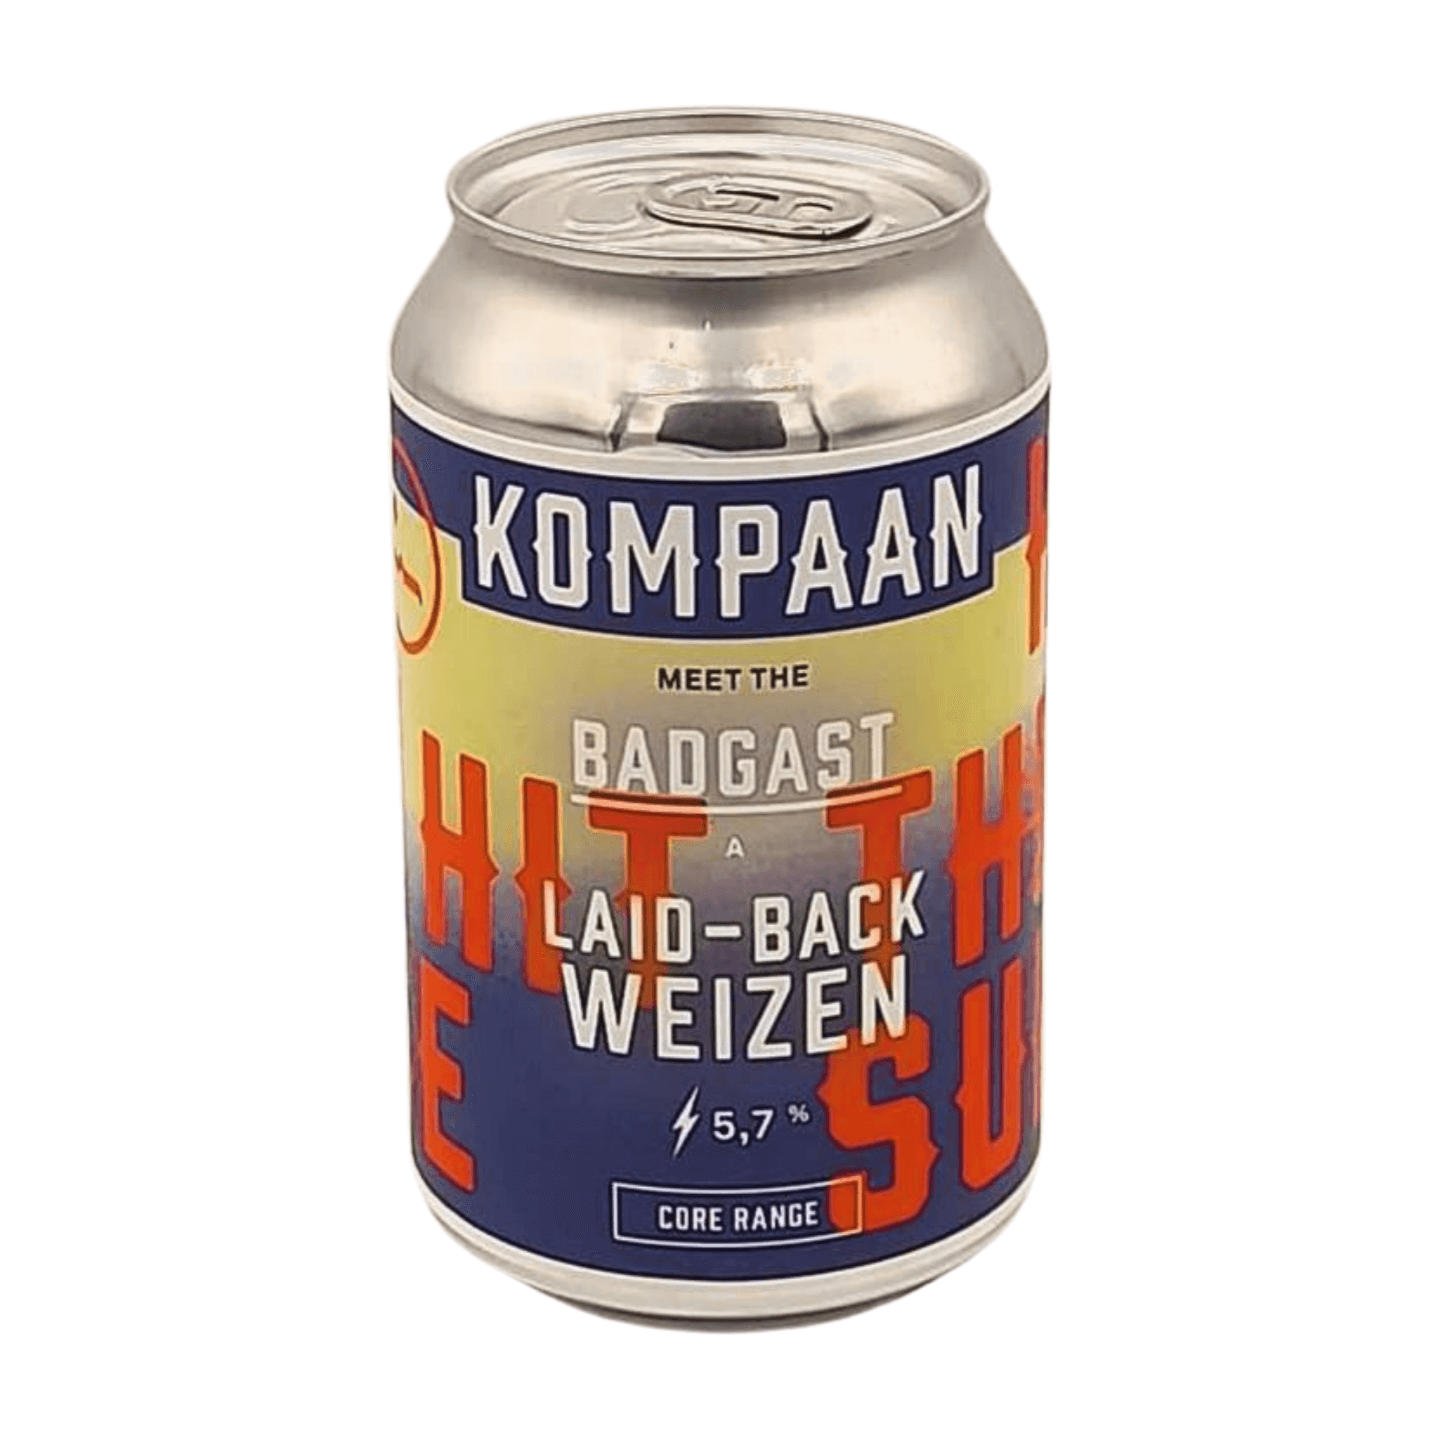 Kompaan Badgast | Weizen Webshop Online Verdins Bierwinkel Rotterdam